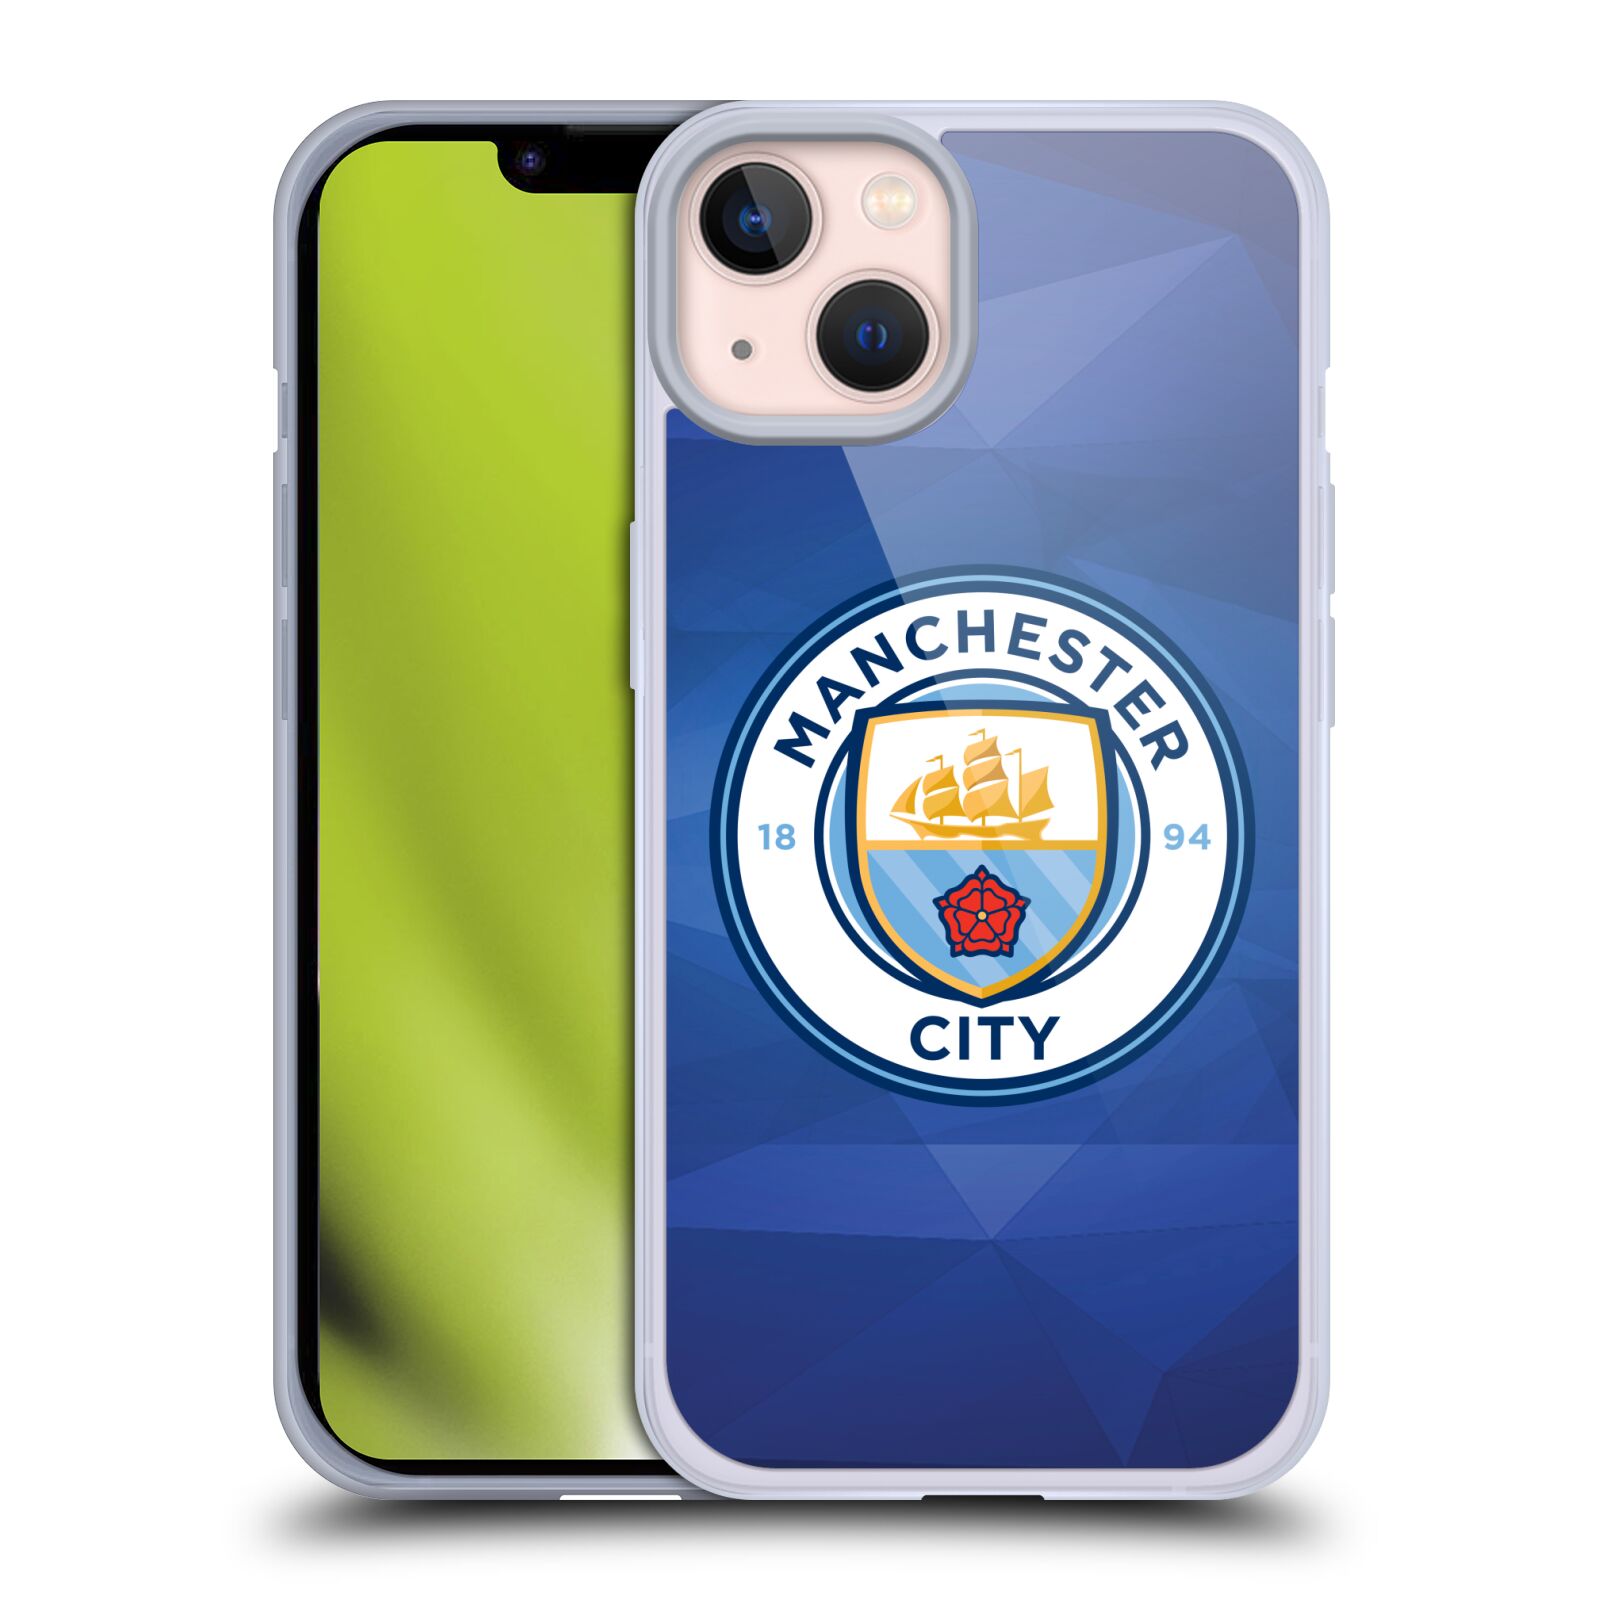 Silikonové pouzdro na mobil Apple iPhone 13 - Head Case - Manchester City FC - Modré nové logo